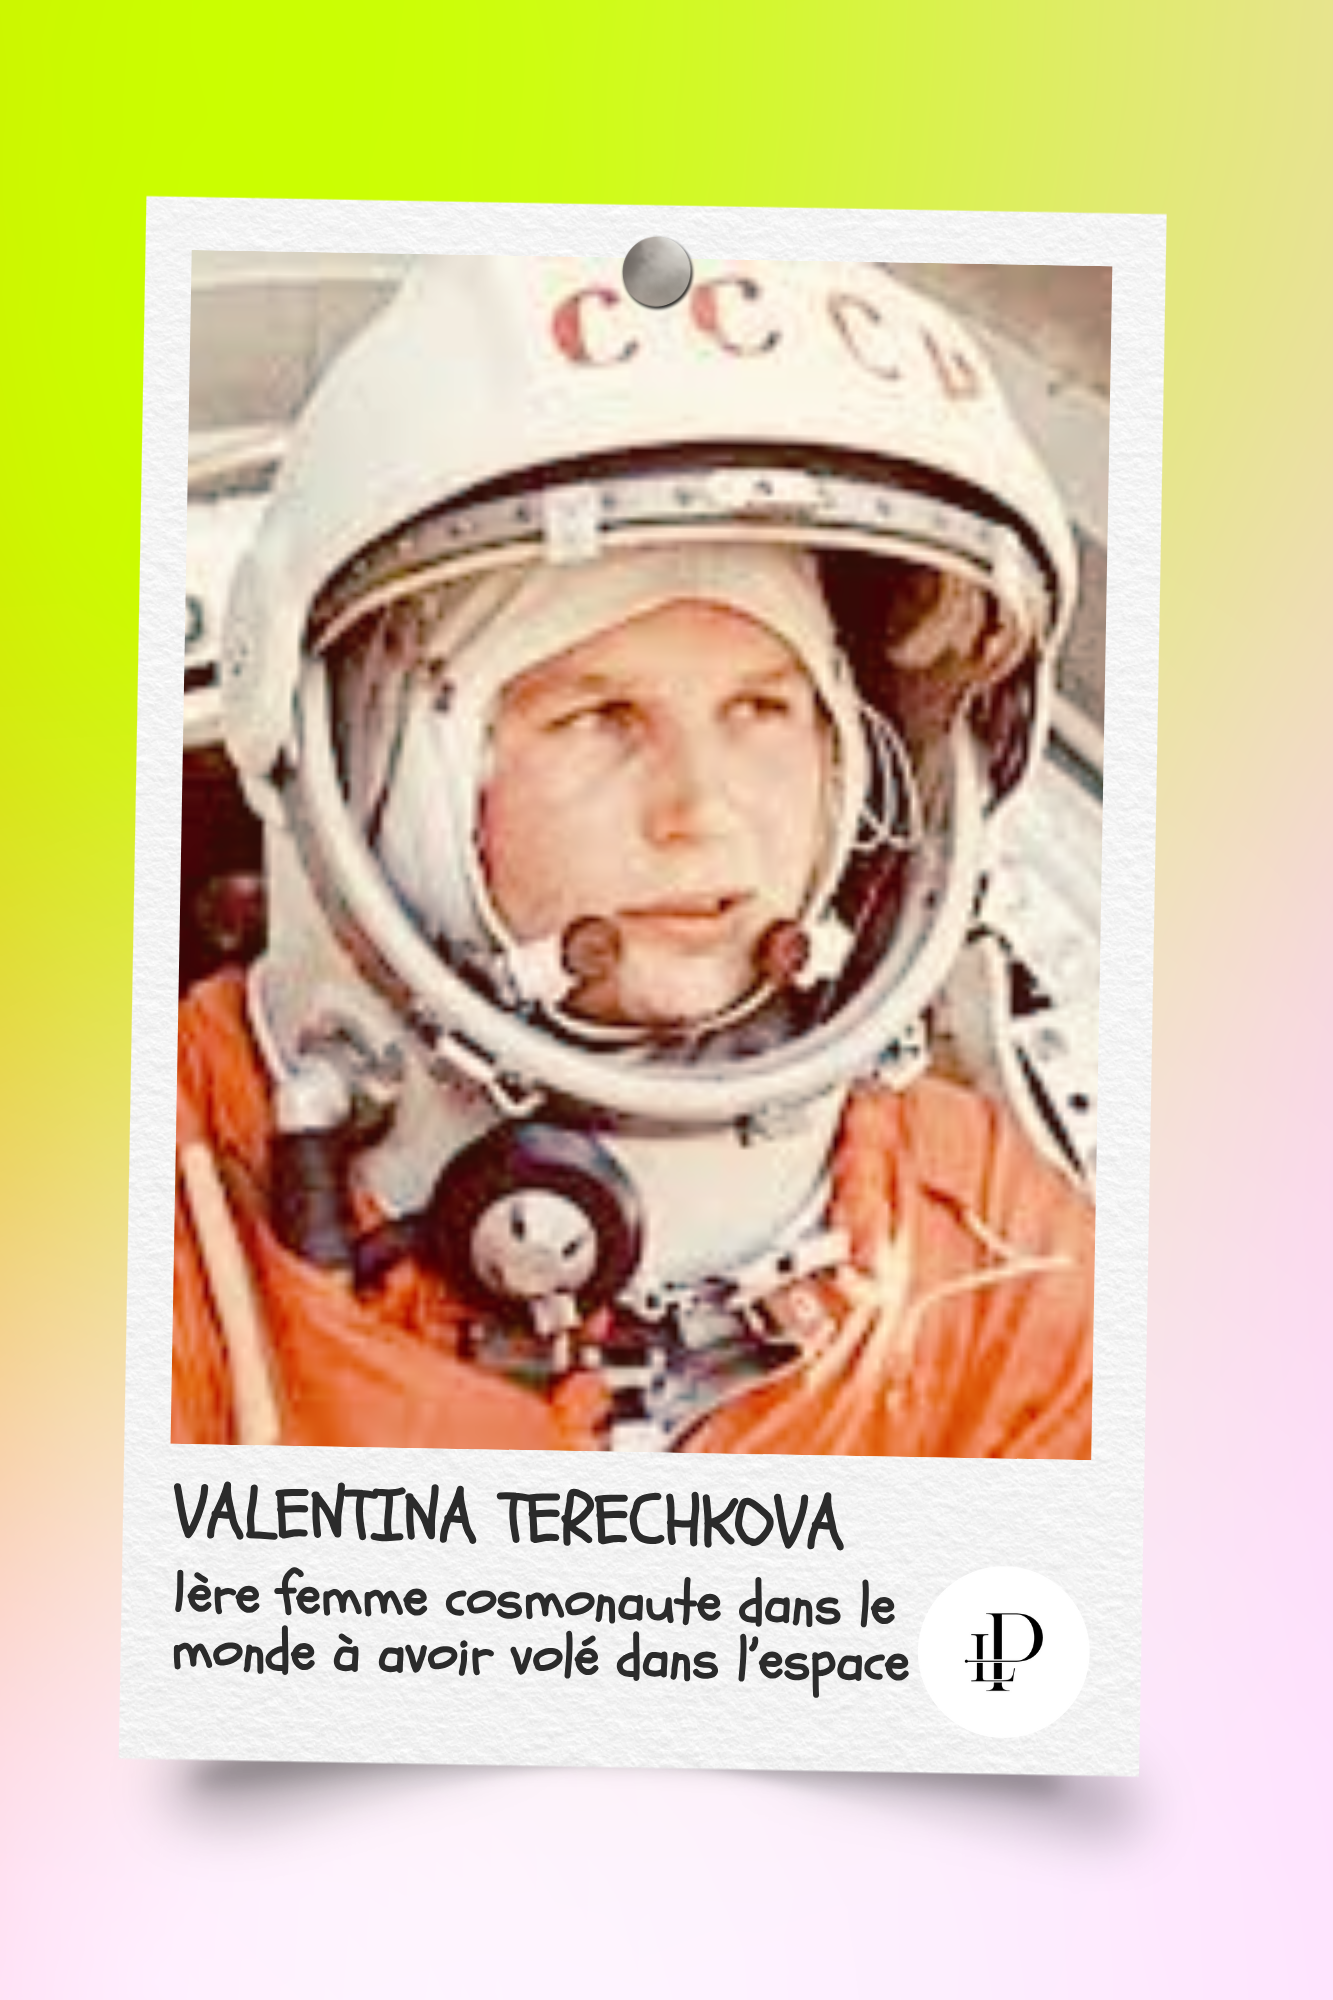 Valentina Terechkova (1937-)